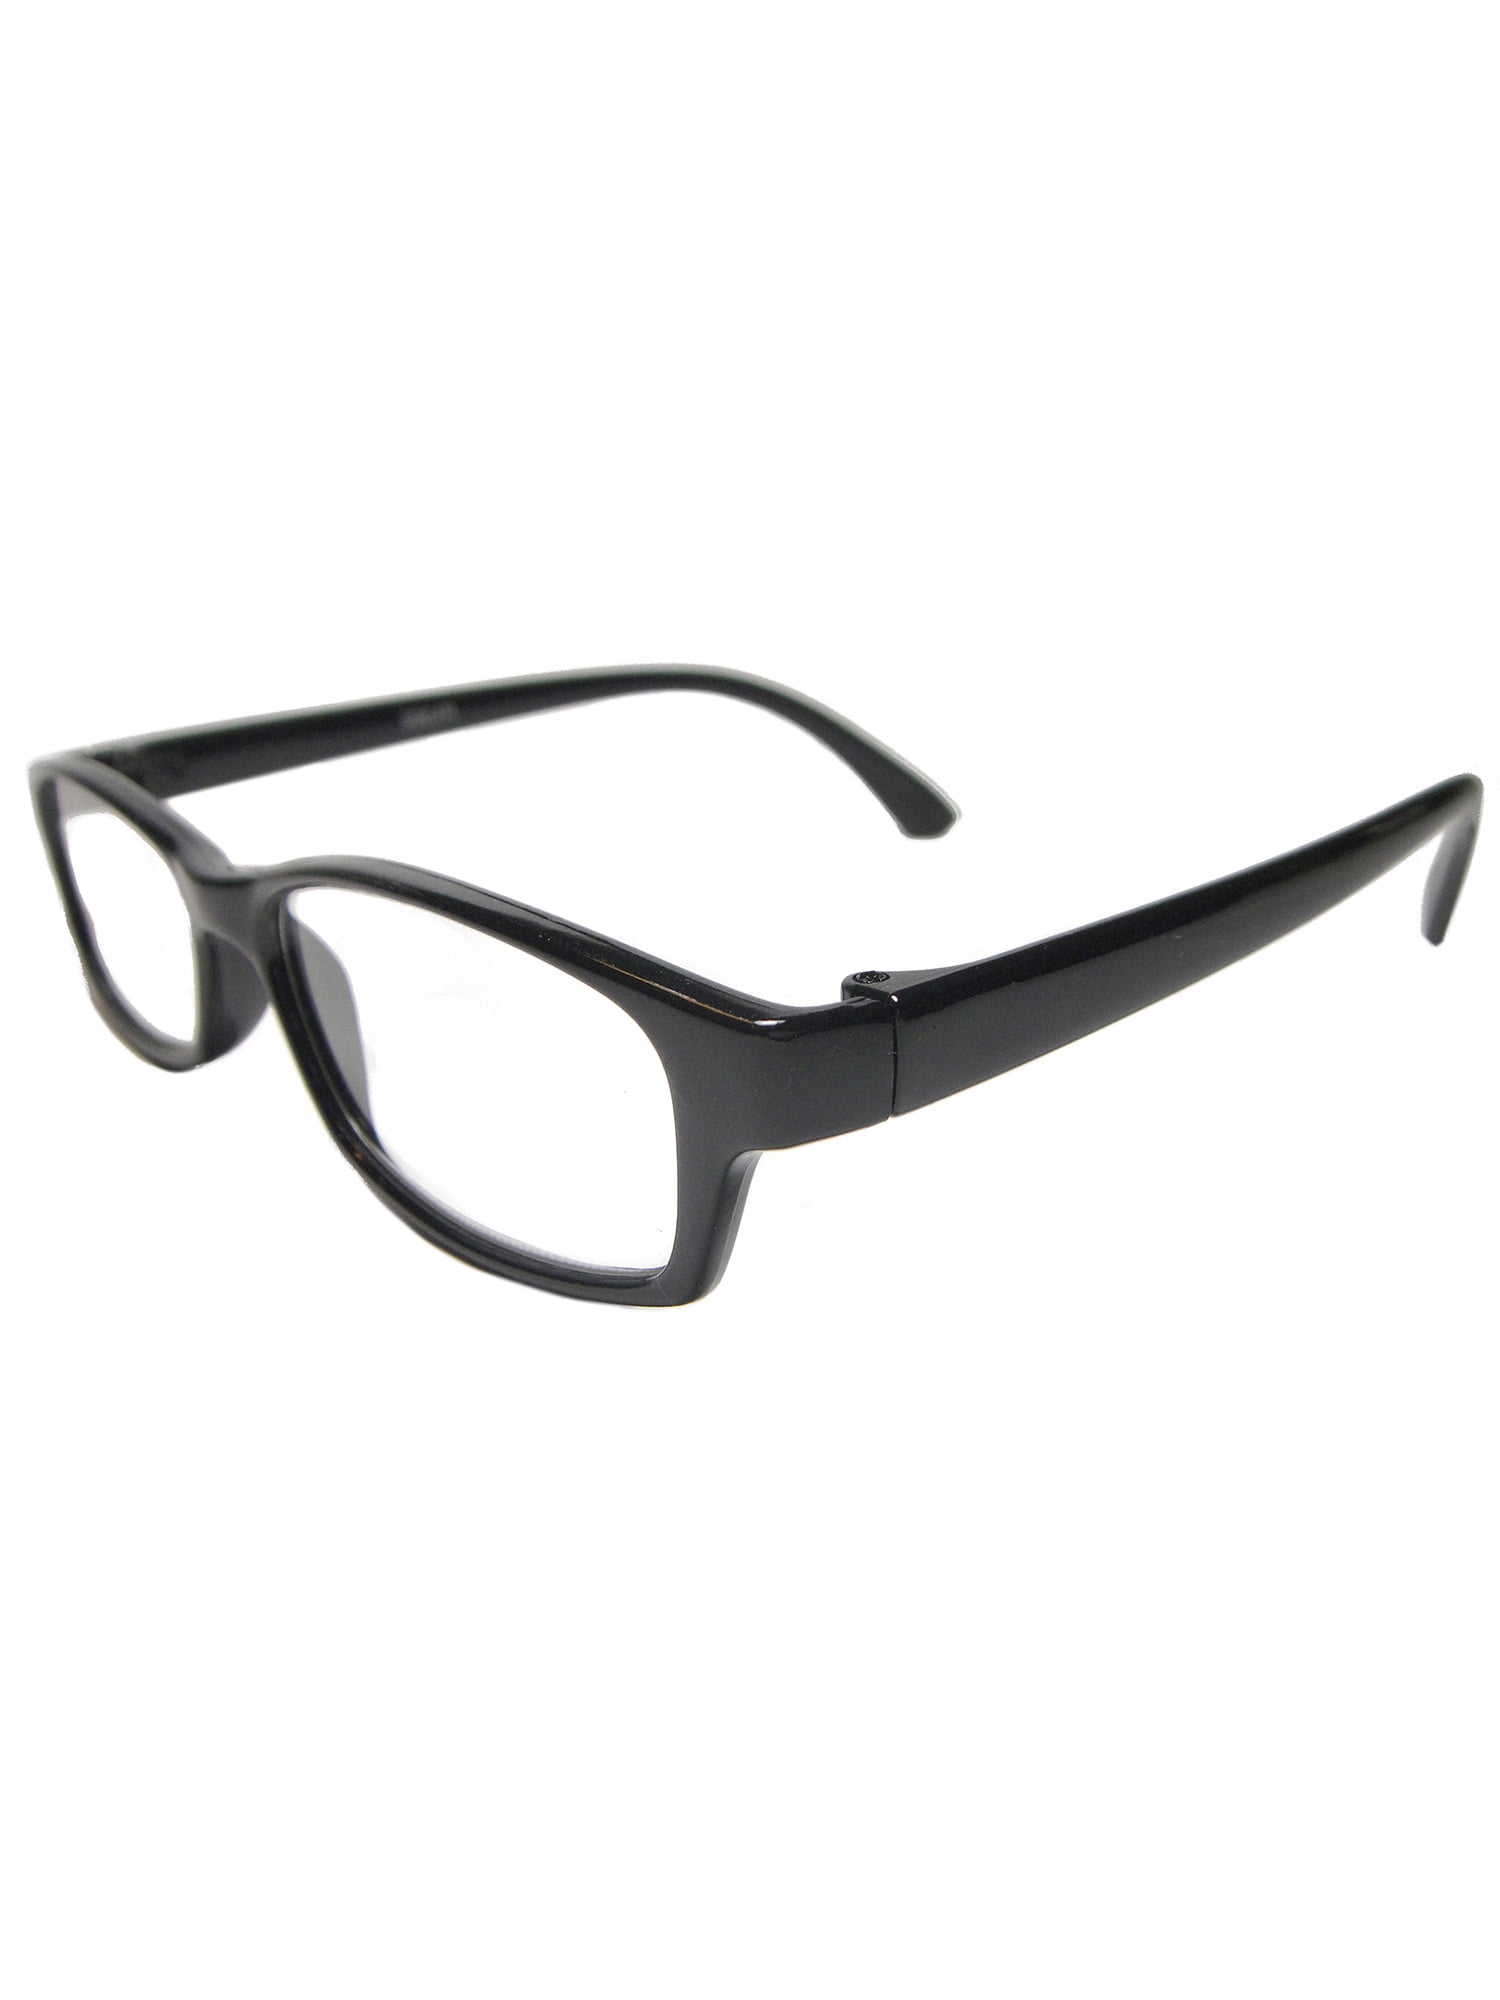 Clear Lens Full Strength Unisex Rectangular Reading Glasses - Walmart ...